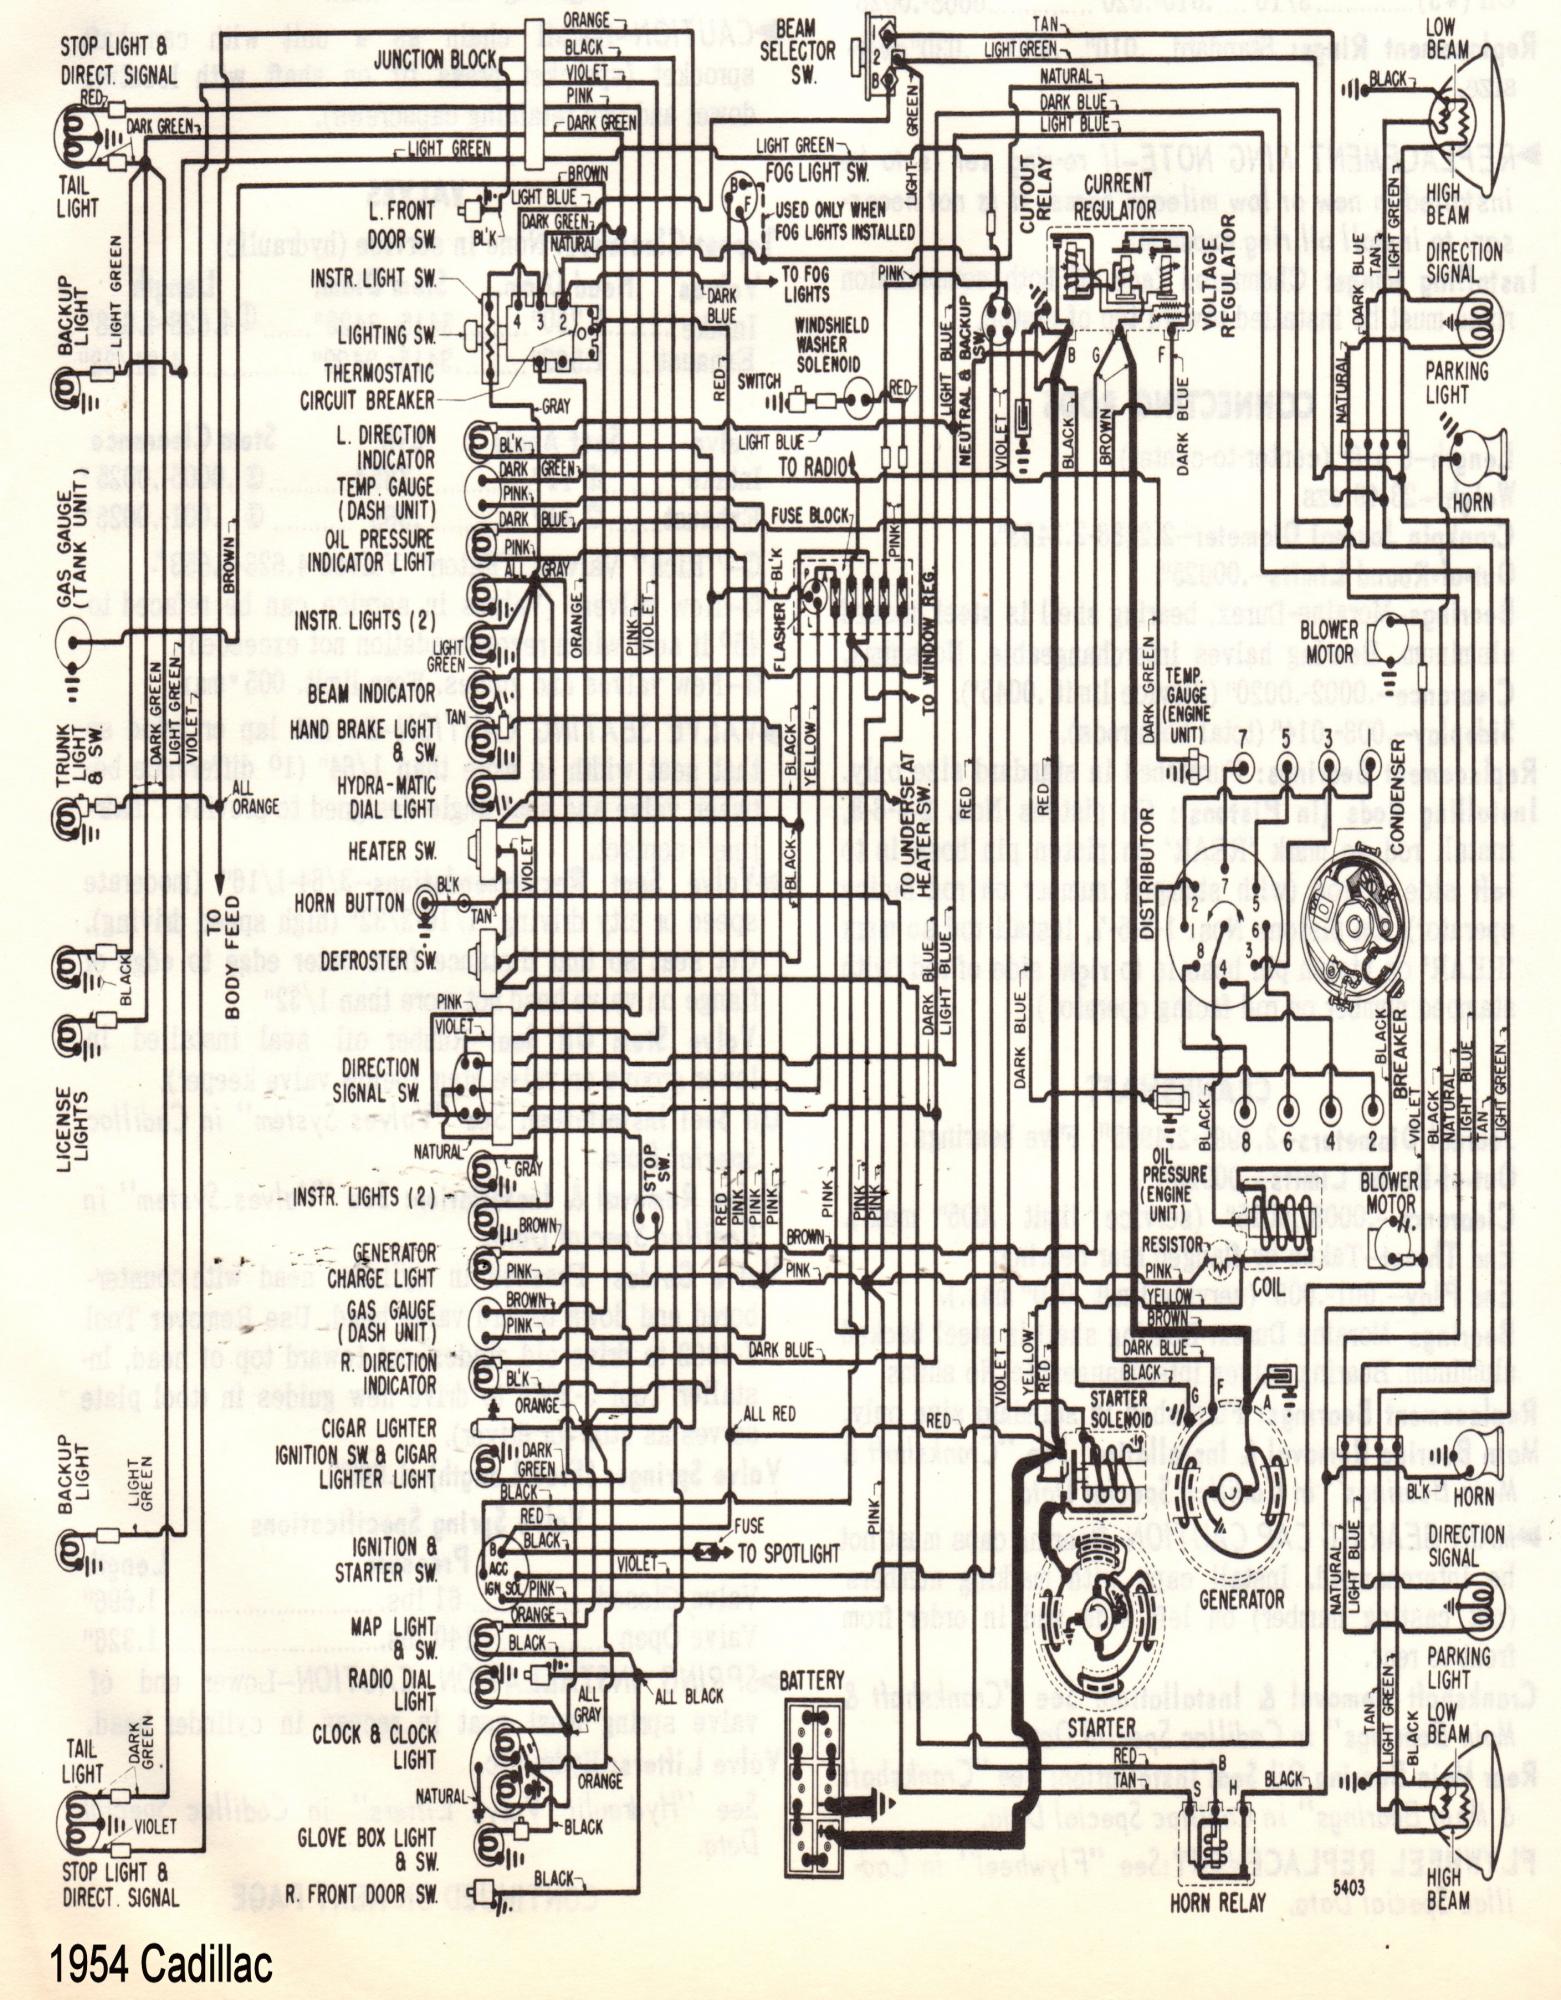 1976 Cadillac Eldorado Wiring Diagram from forums.cadillaclasalleclub.org